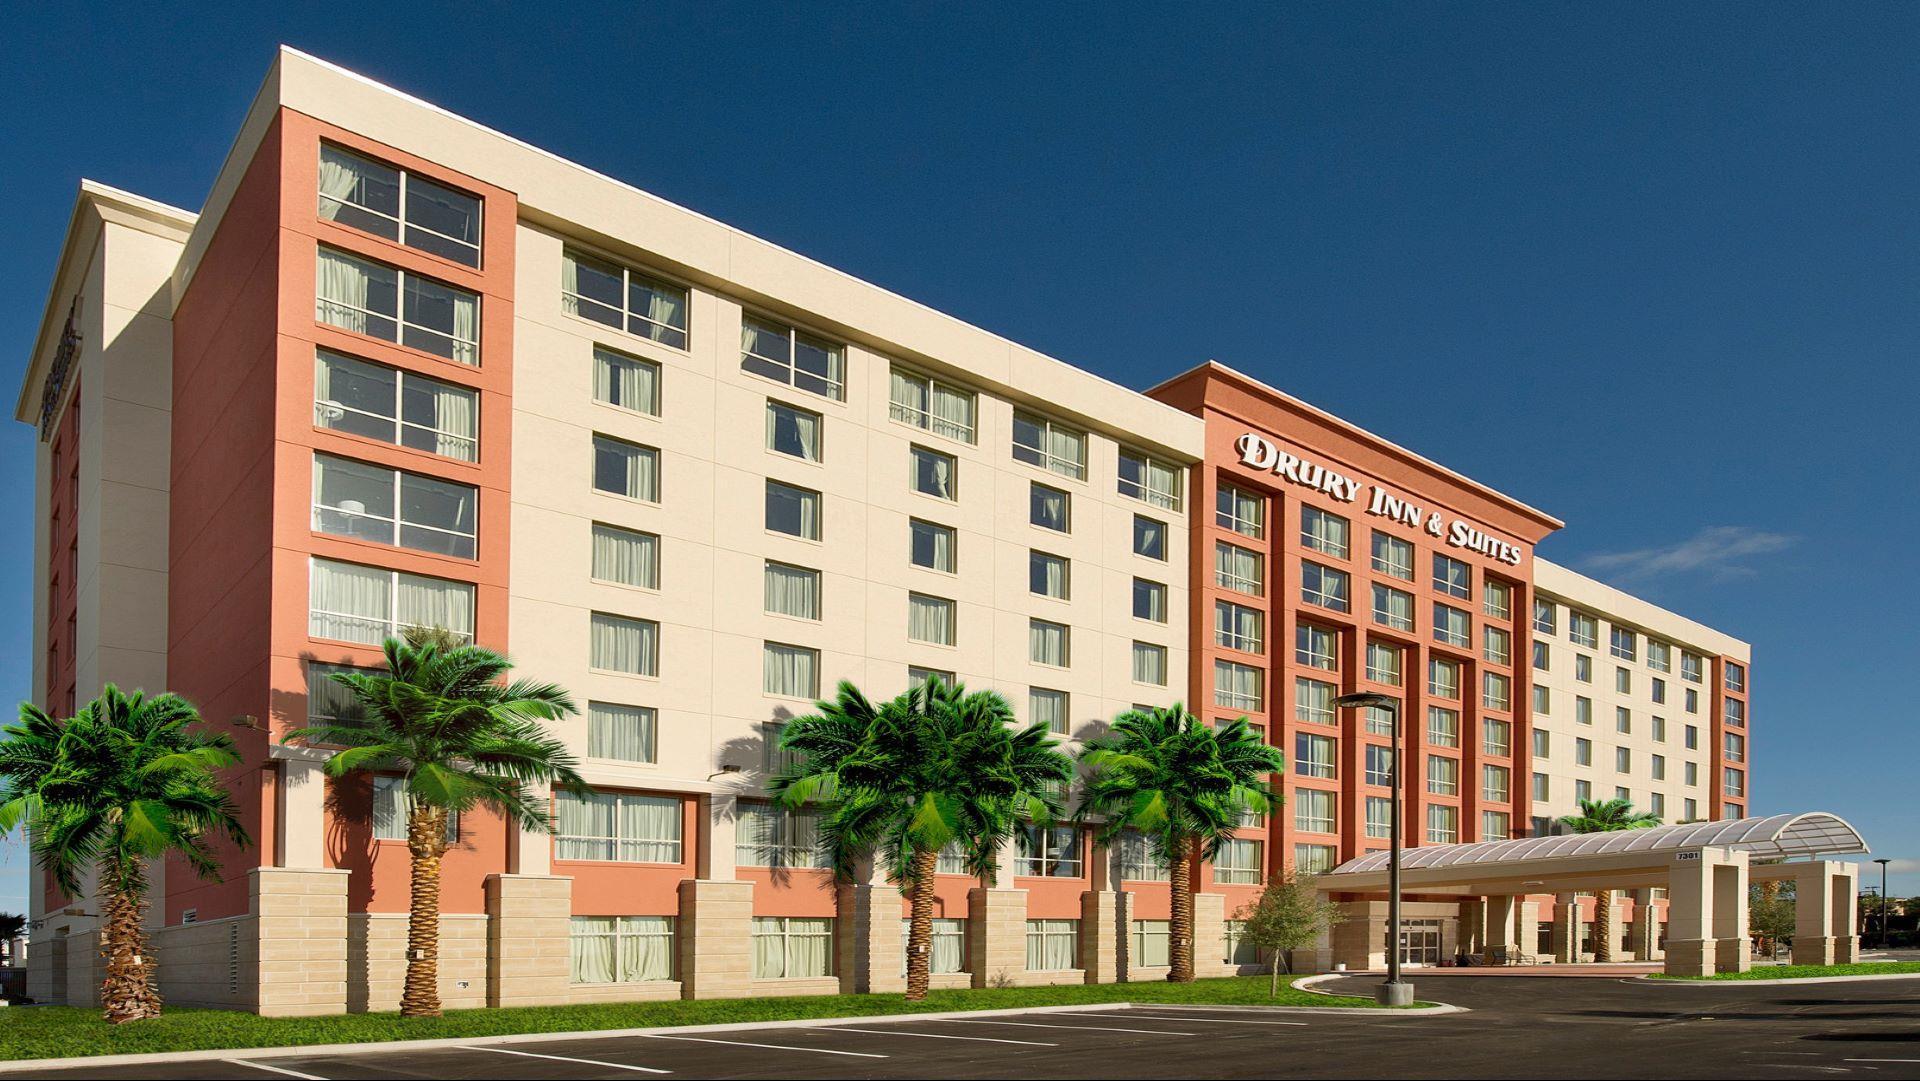 Drury Inn & Suites near Universal Orlando Resort™ in Orlando, FL